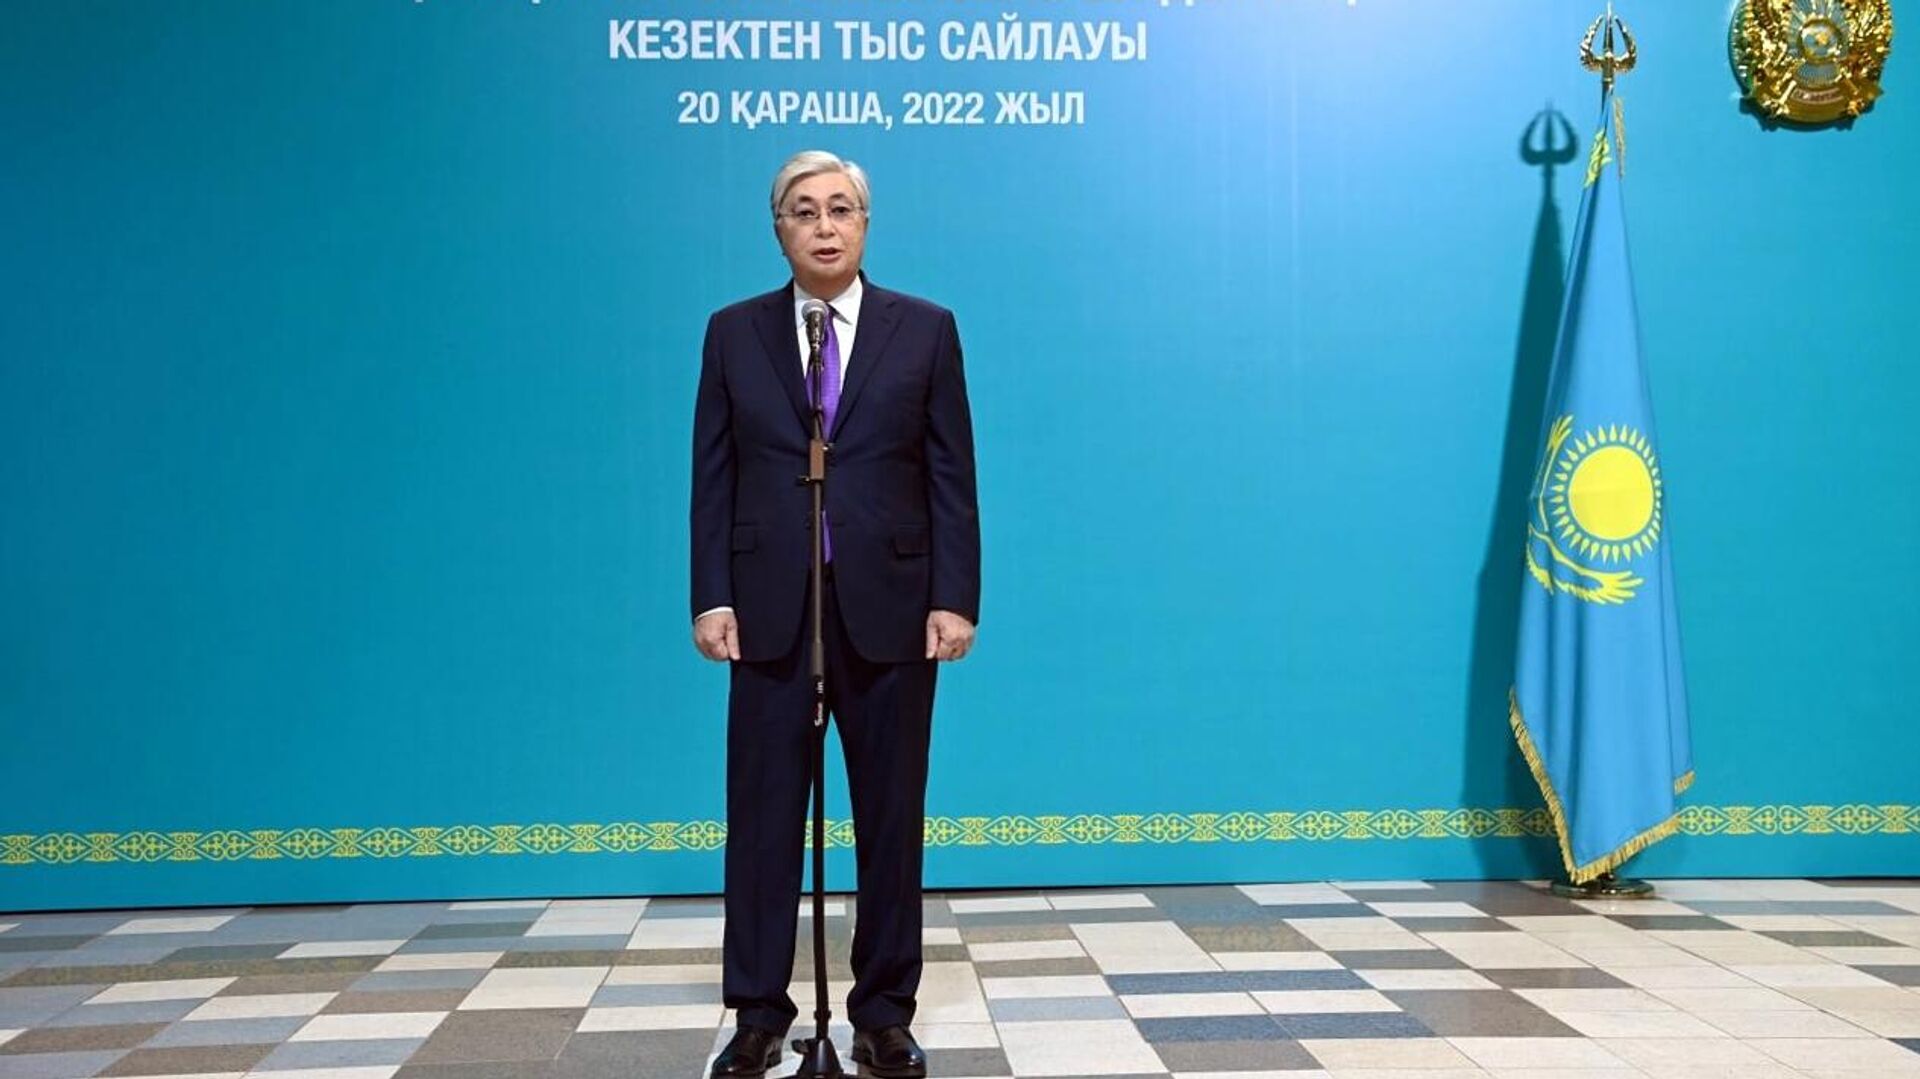 Токаев одерживает победу на выборах президента Казахстана - РИА Новости, 21.11.2022